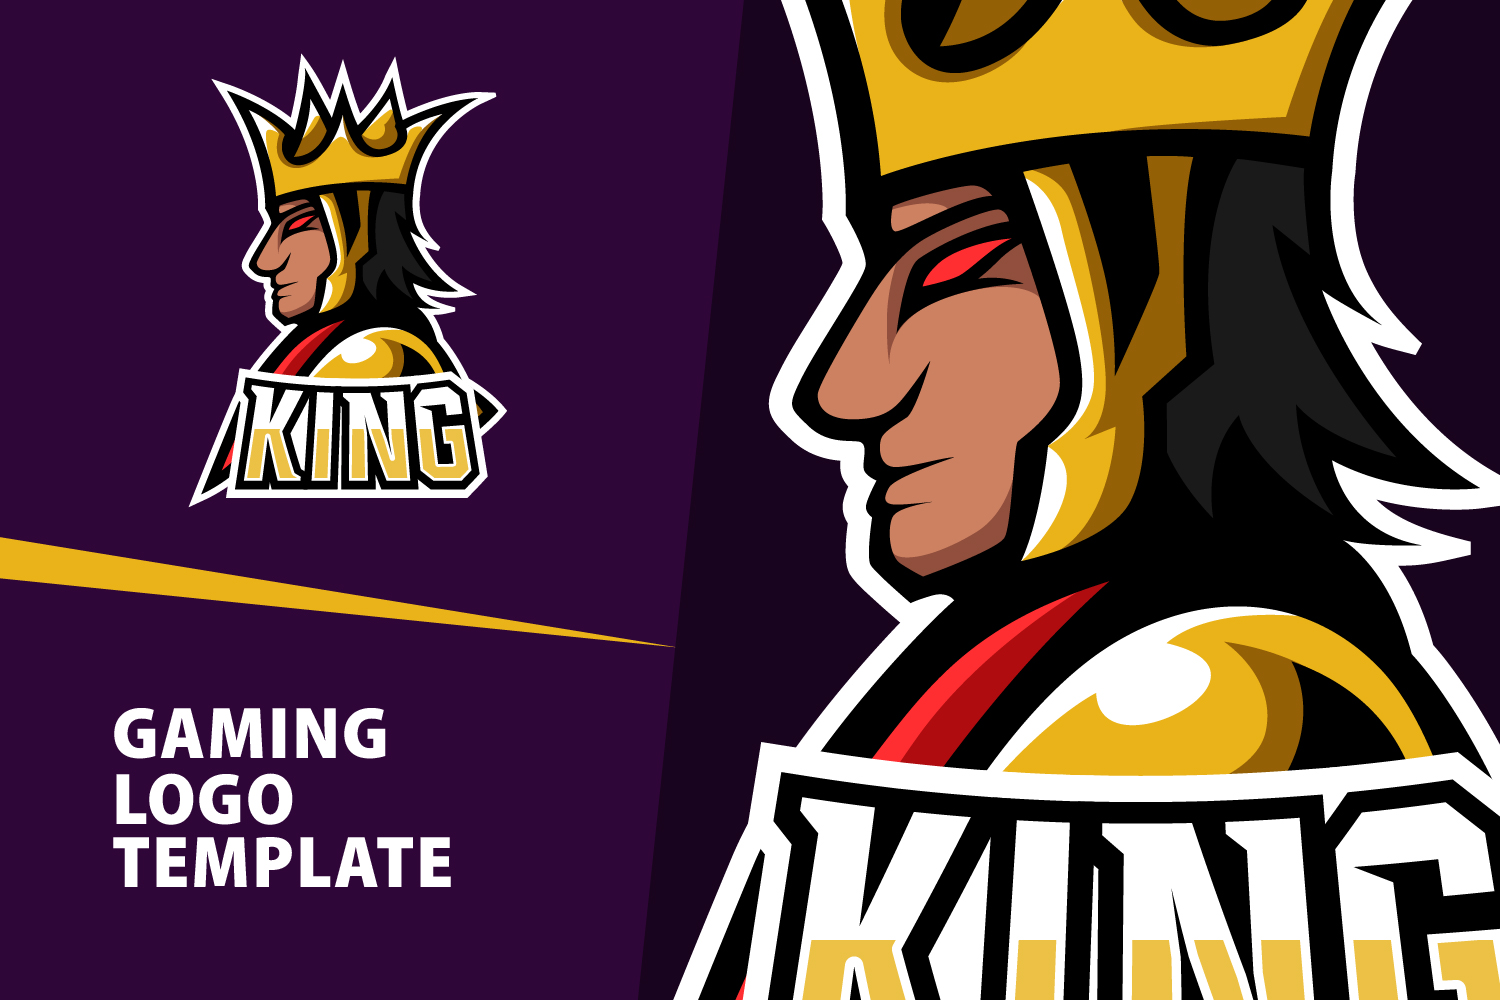 King Gaming Logo Template